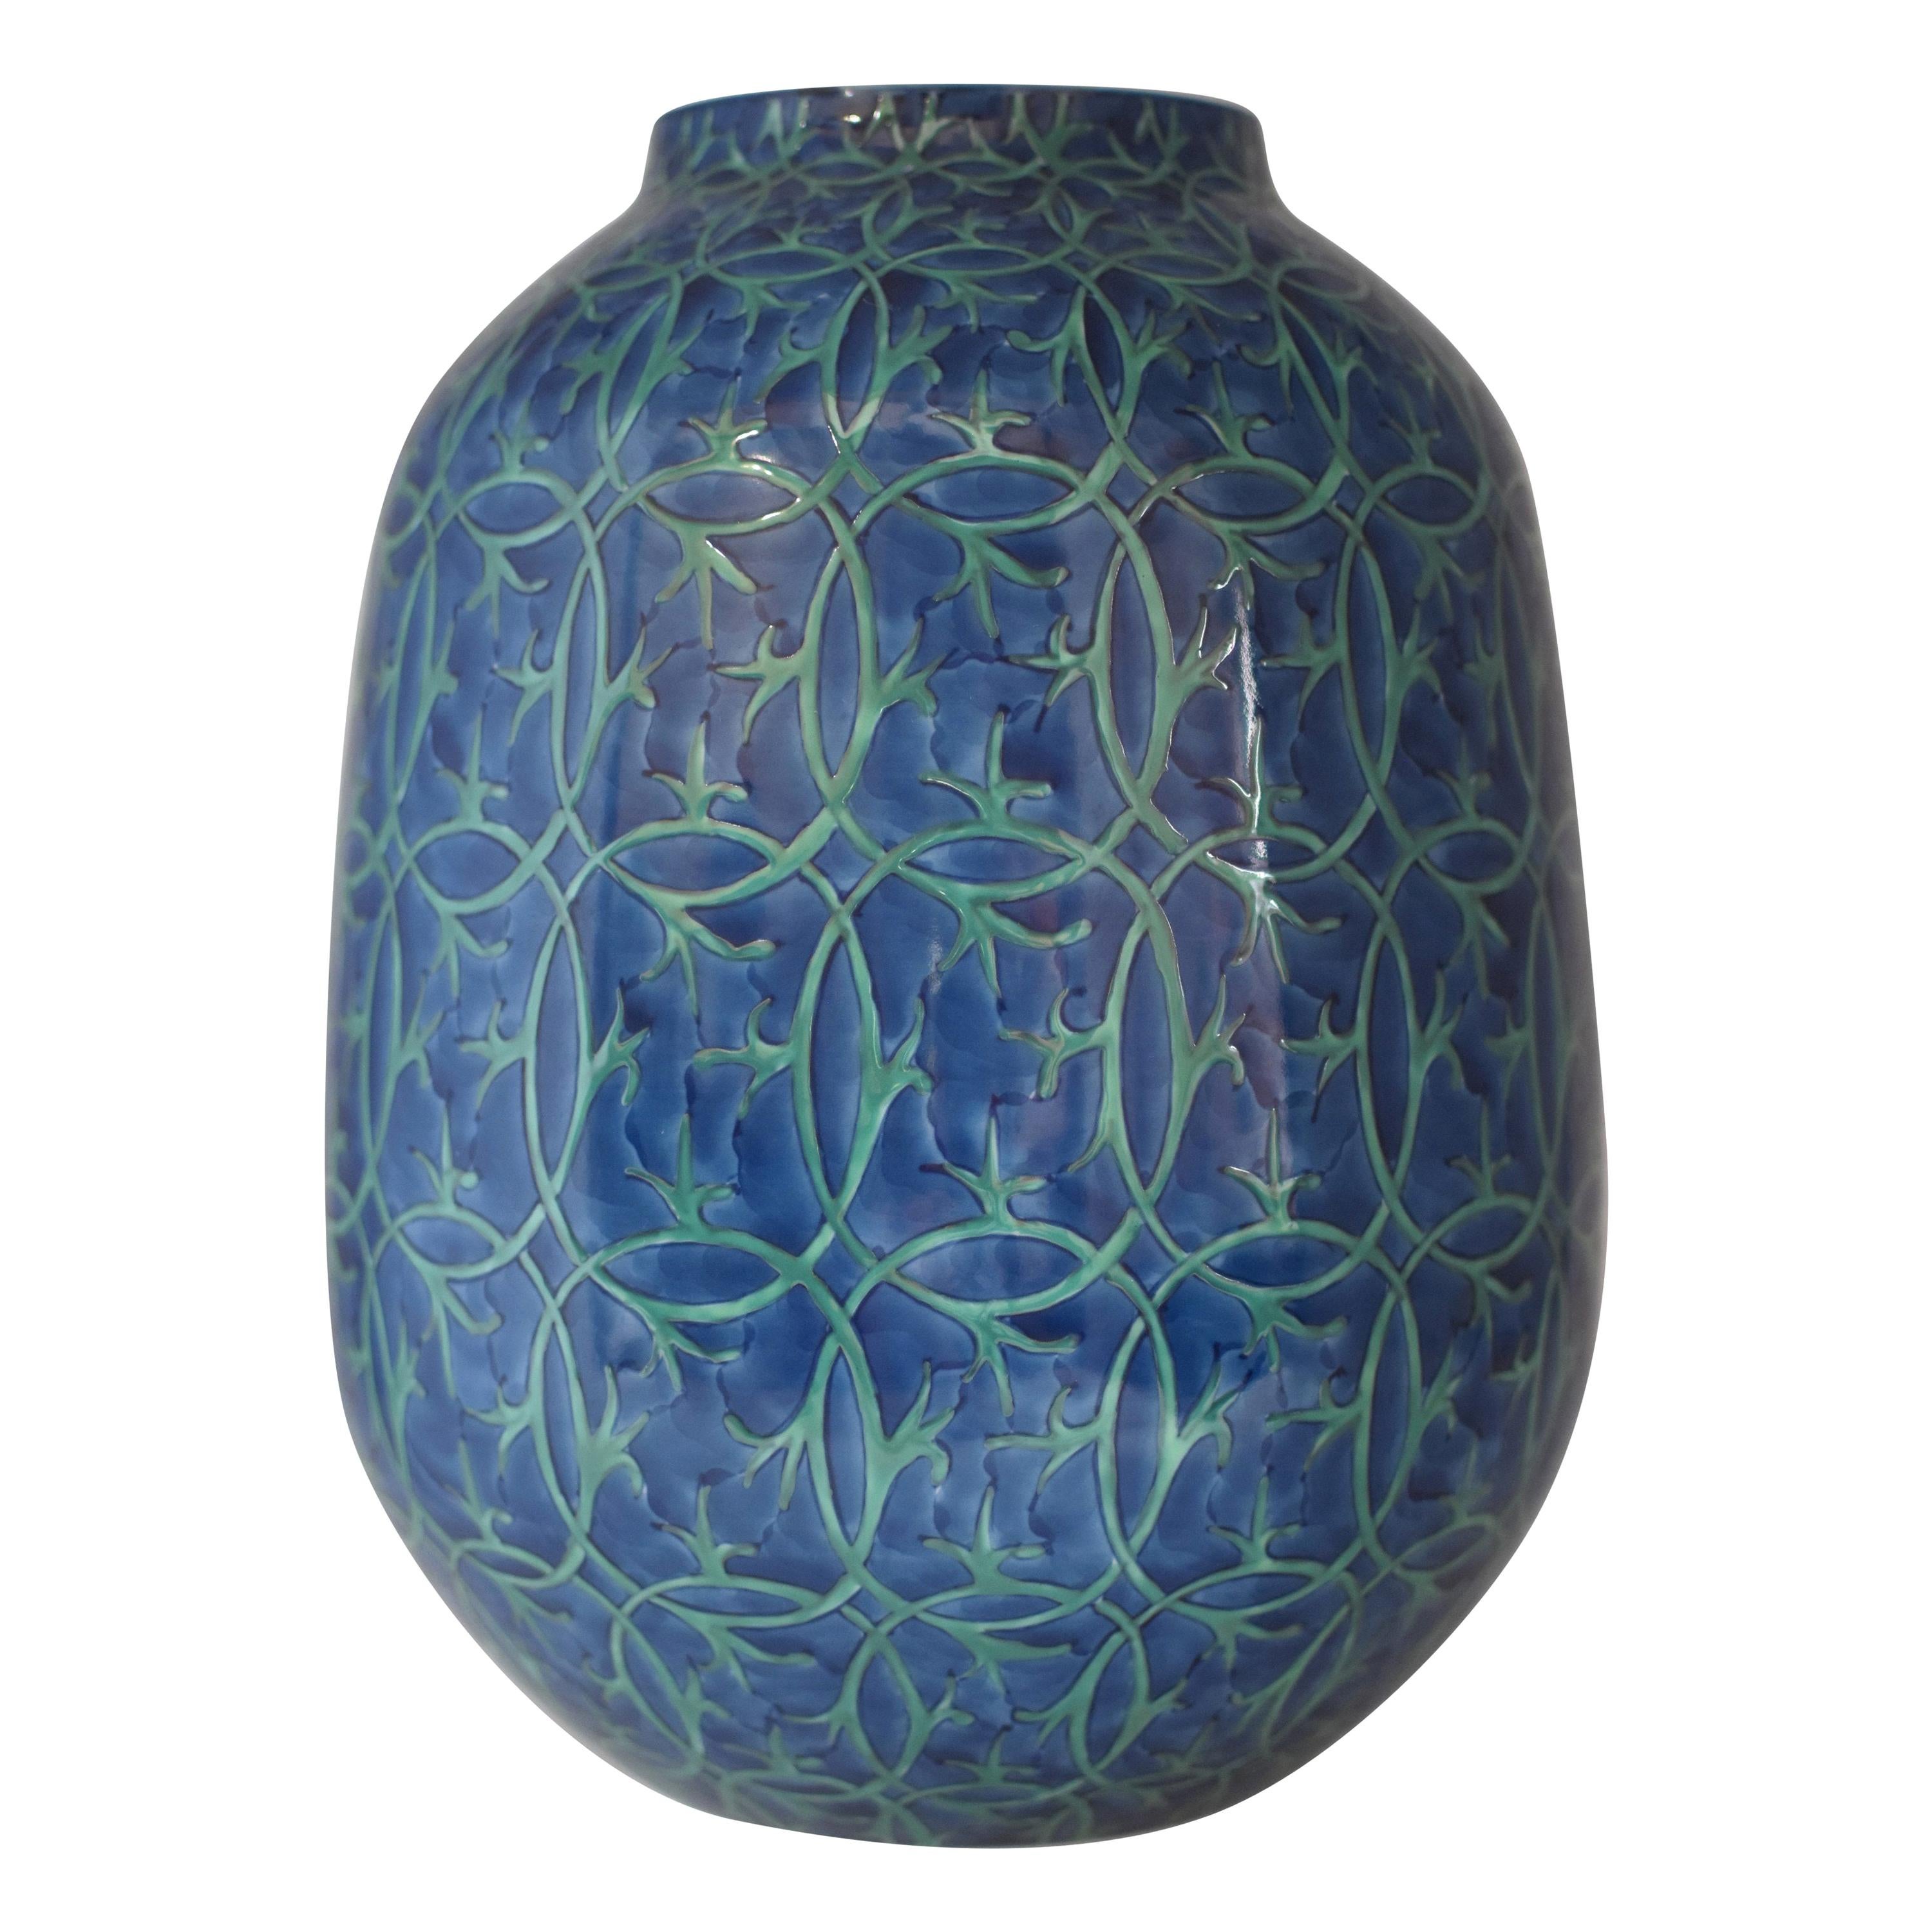 Vase japonais en porcelaine bleu et vert par un maître artiste contemporain